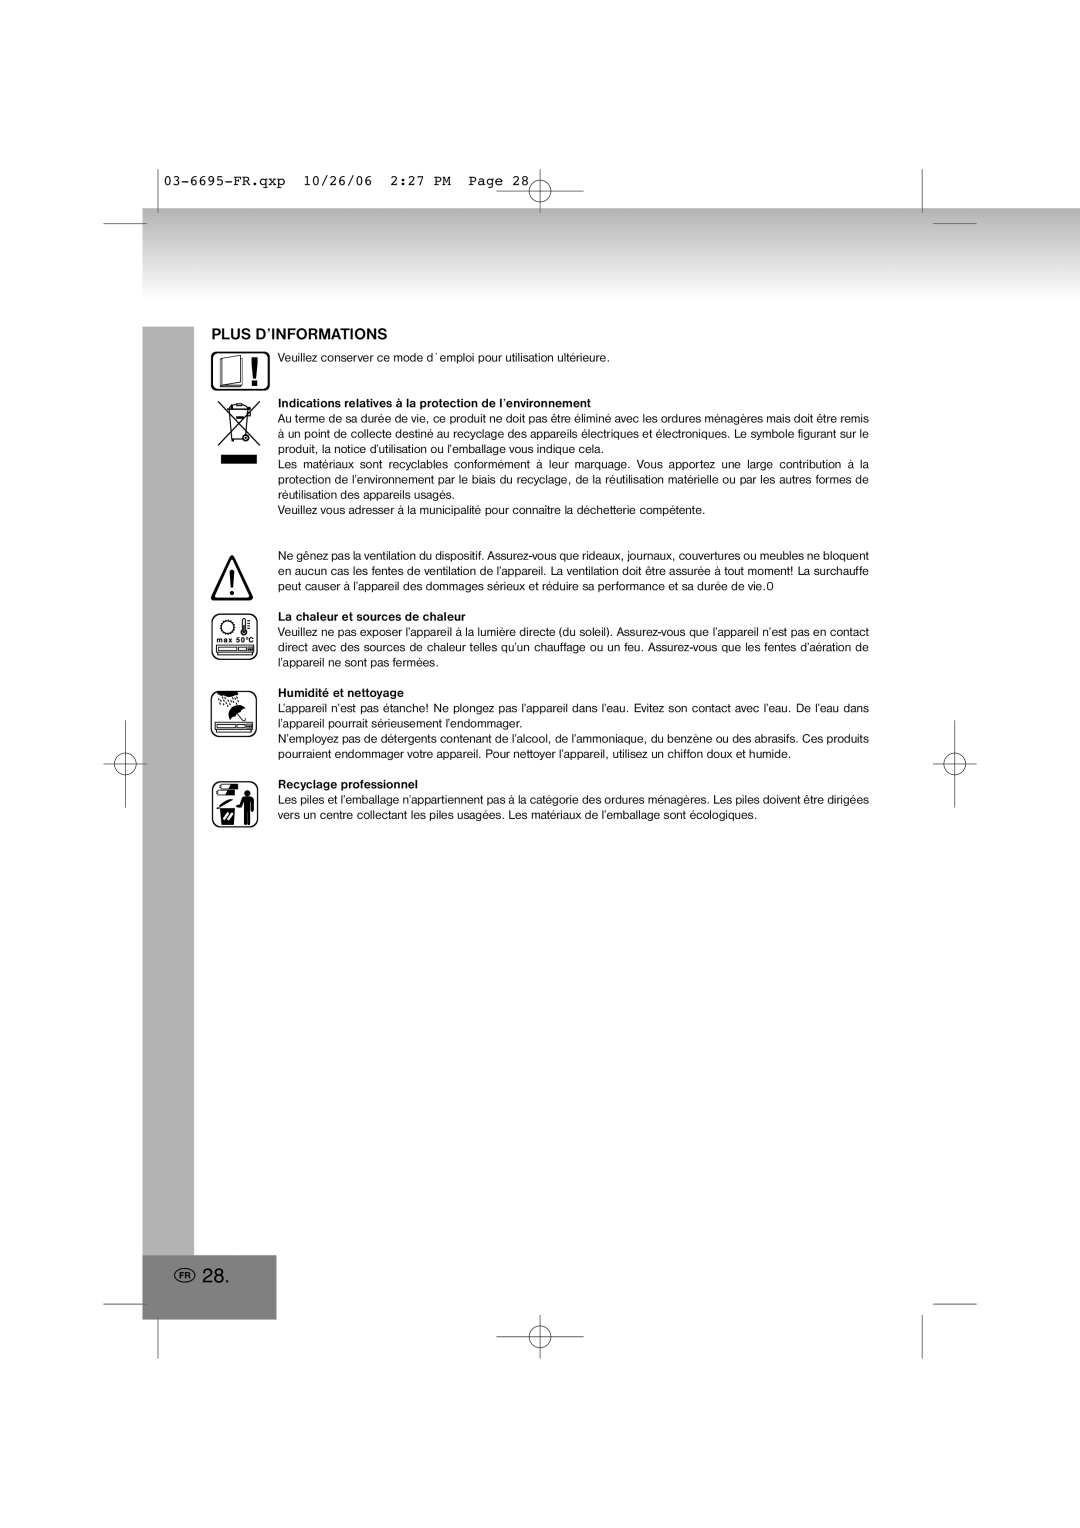 Elta manual Plus D’Informations, 03-6695-FR.qxp10/26/06 2 27 PM Page, La chaleur et sources de chaleur 